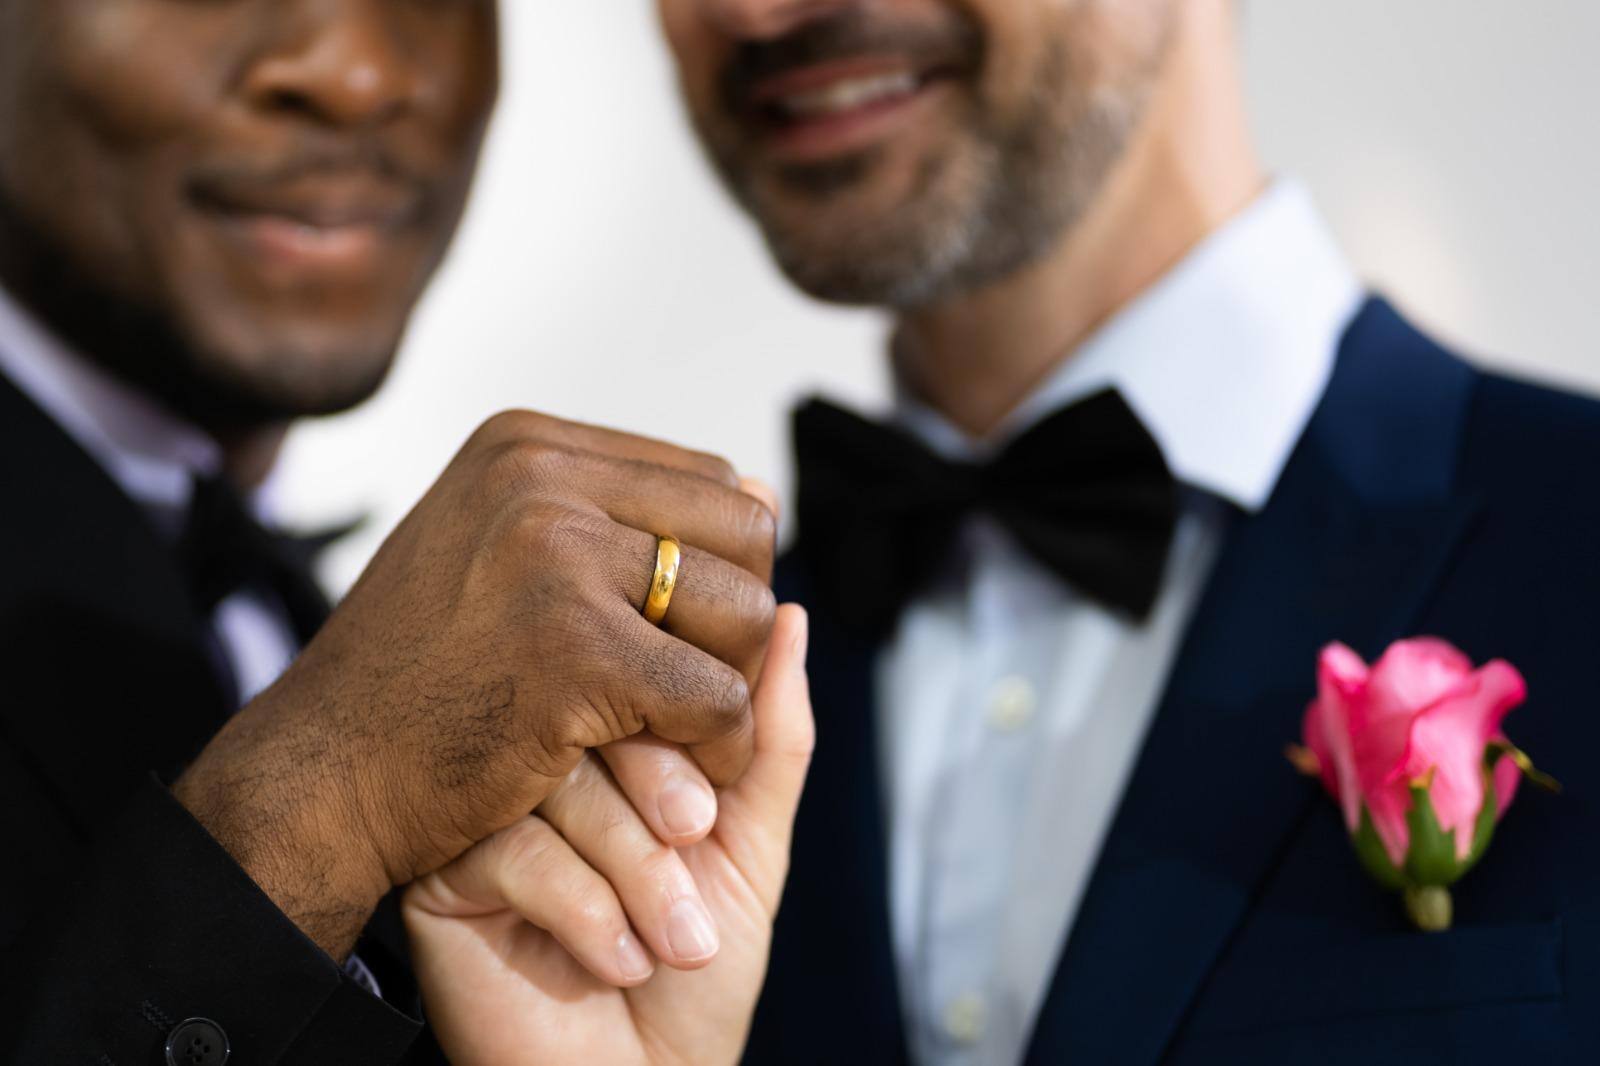 Casamento homoafetivo cresce no Brasil